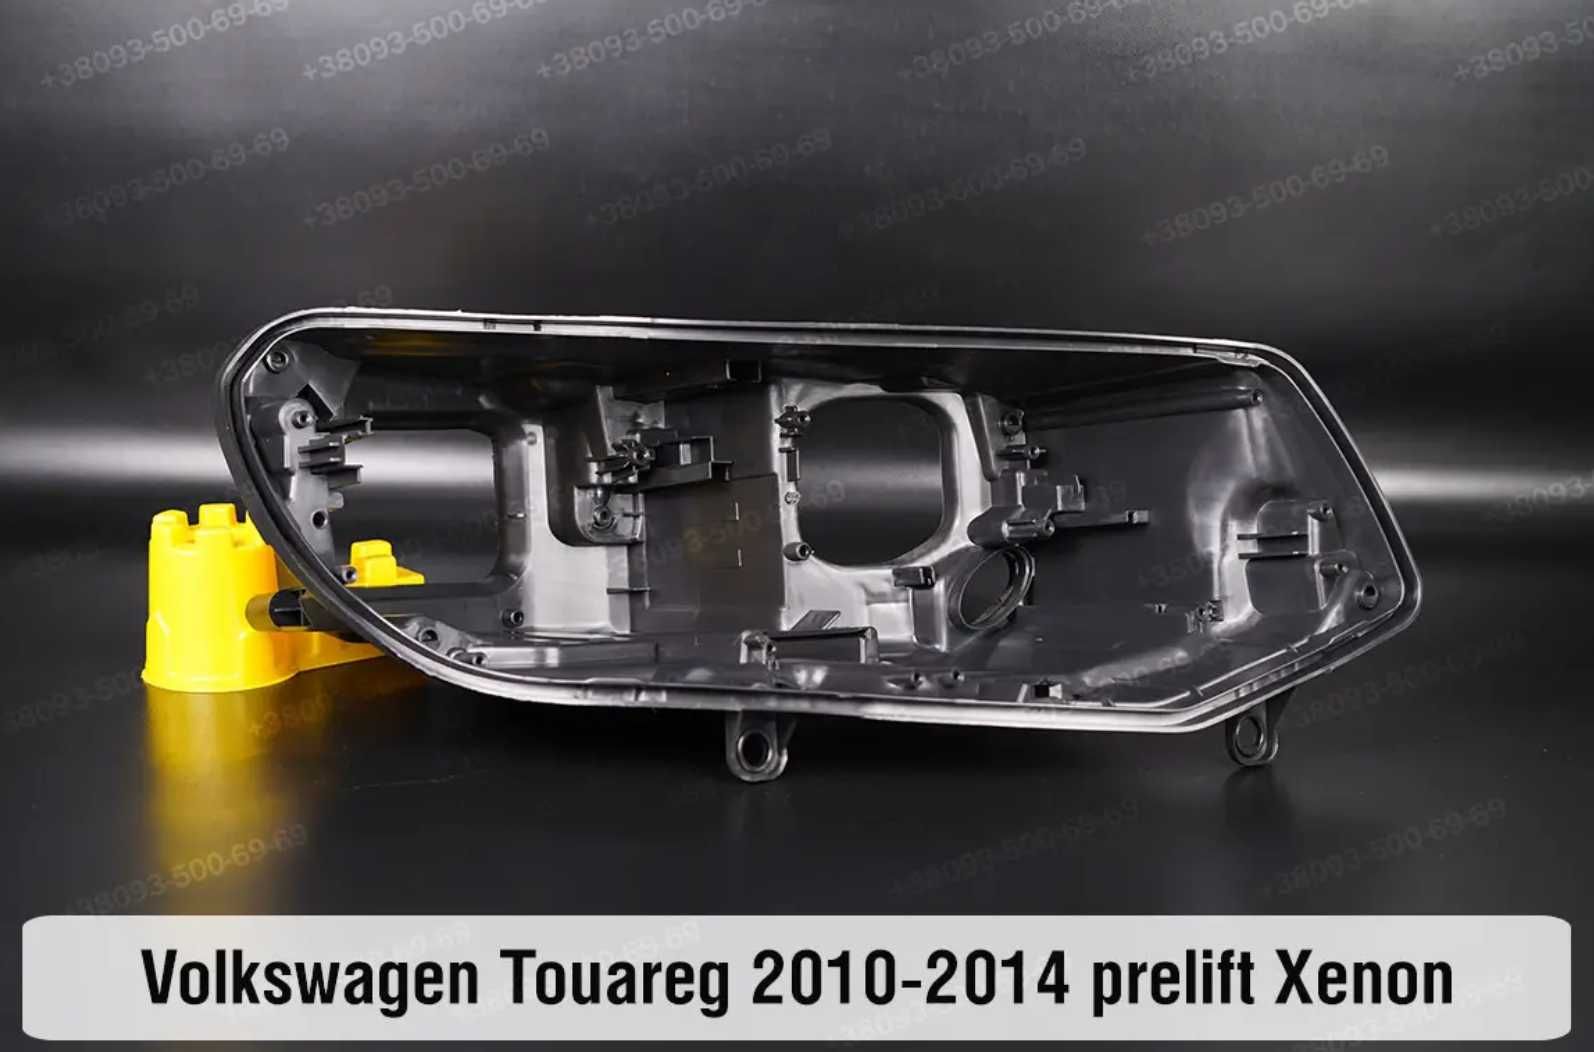 Скло корпус світловод на фару VW Touareg Туарег 2002-2018 стекла фар